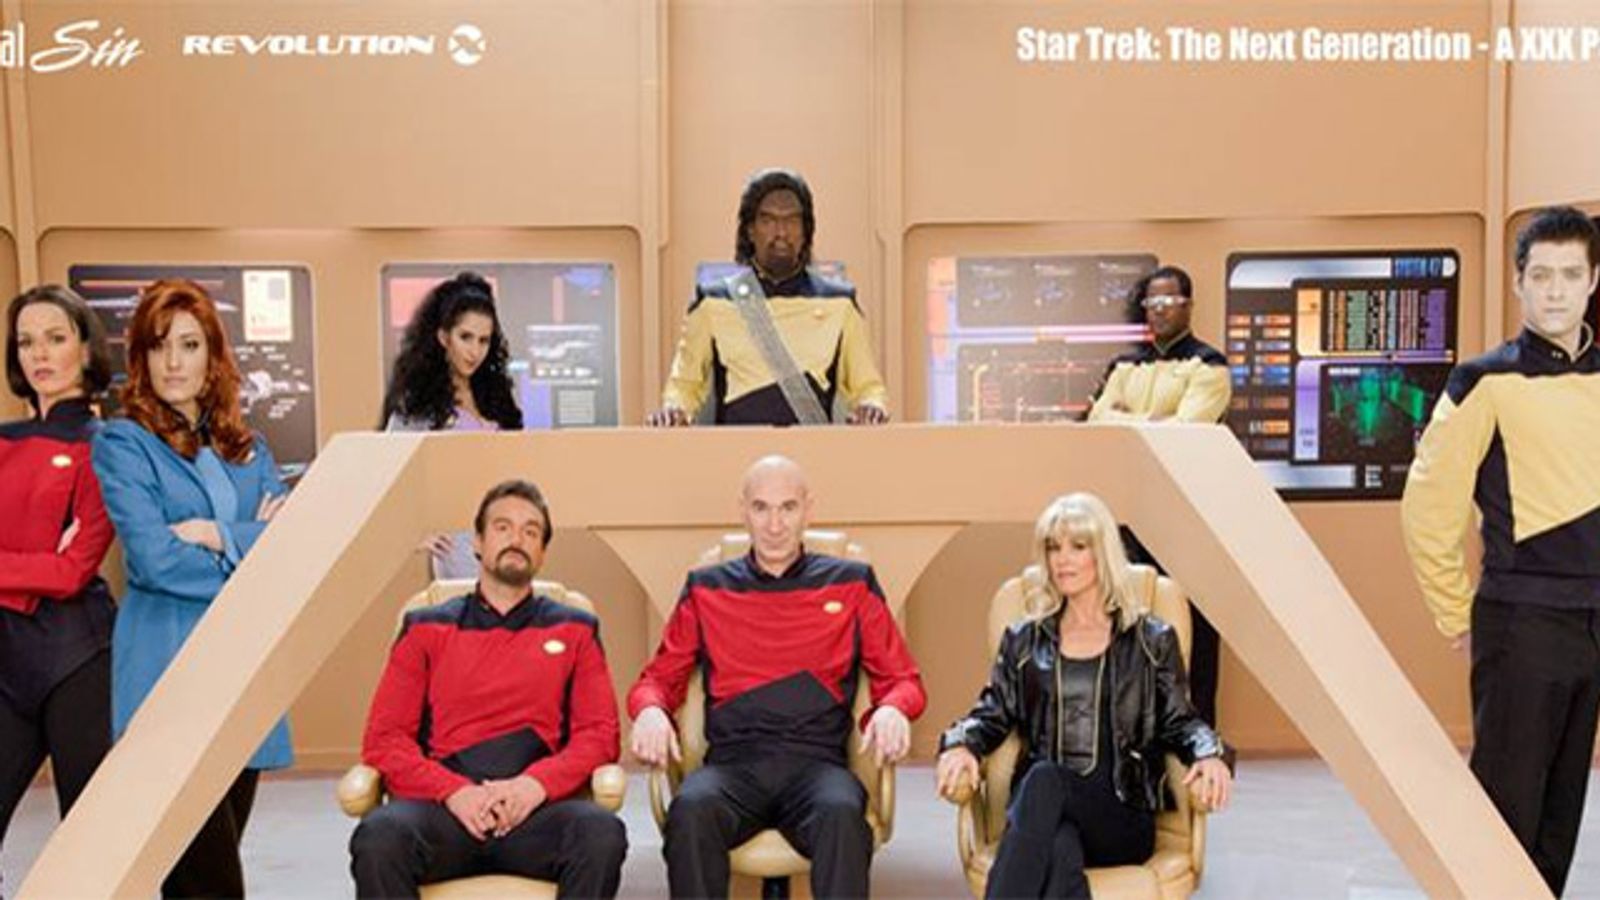 Star Trek: The Next Generation: A XXX Parody' Wraps | AVN